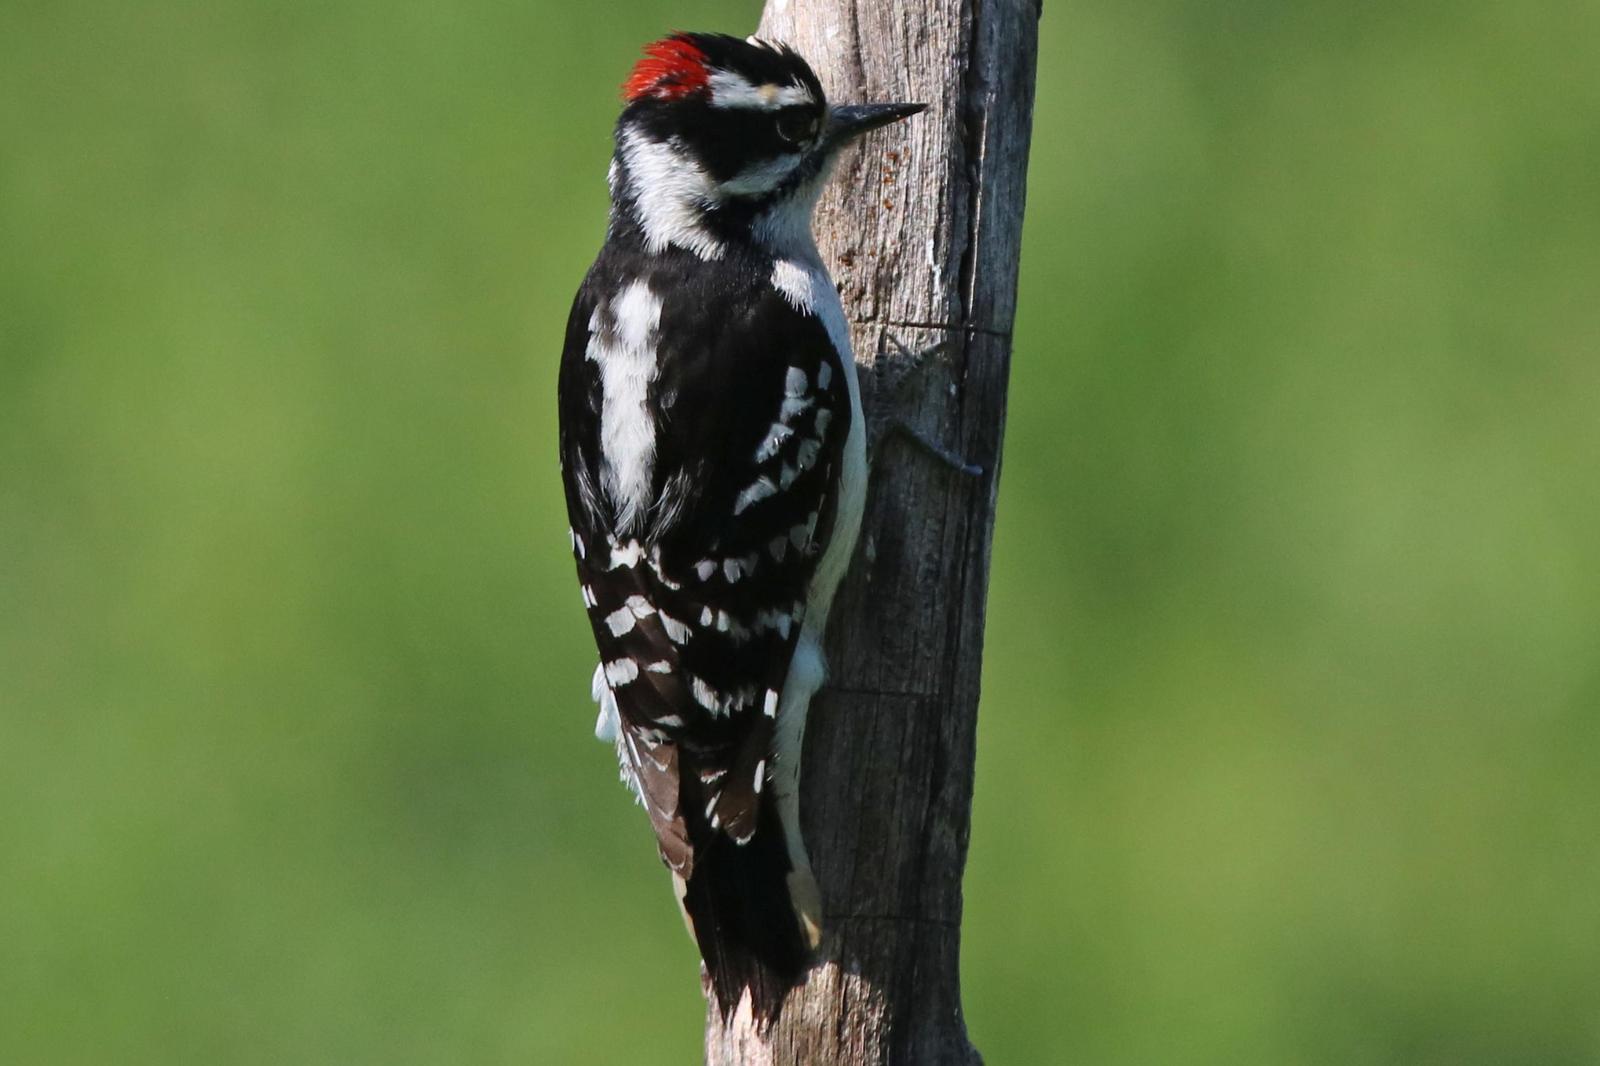 Downy Woodpecker Photo by Kristy Baker